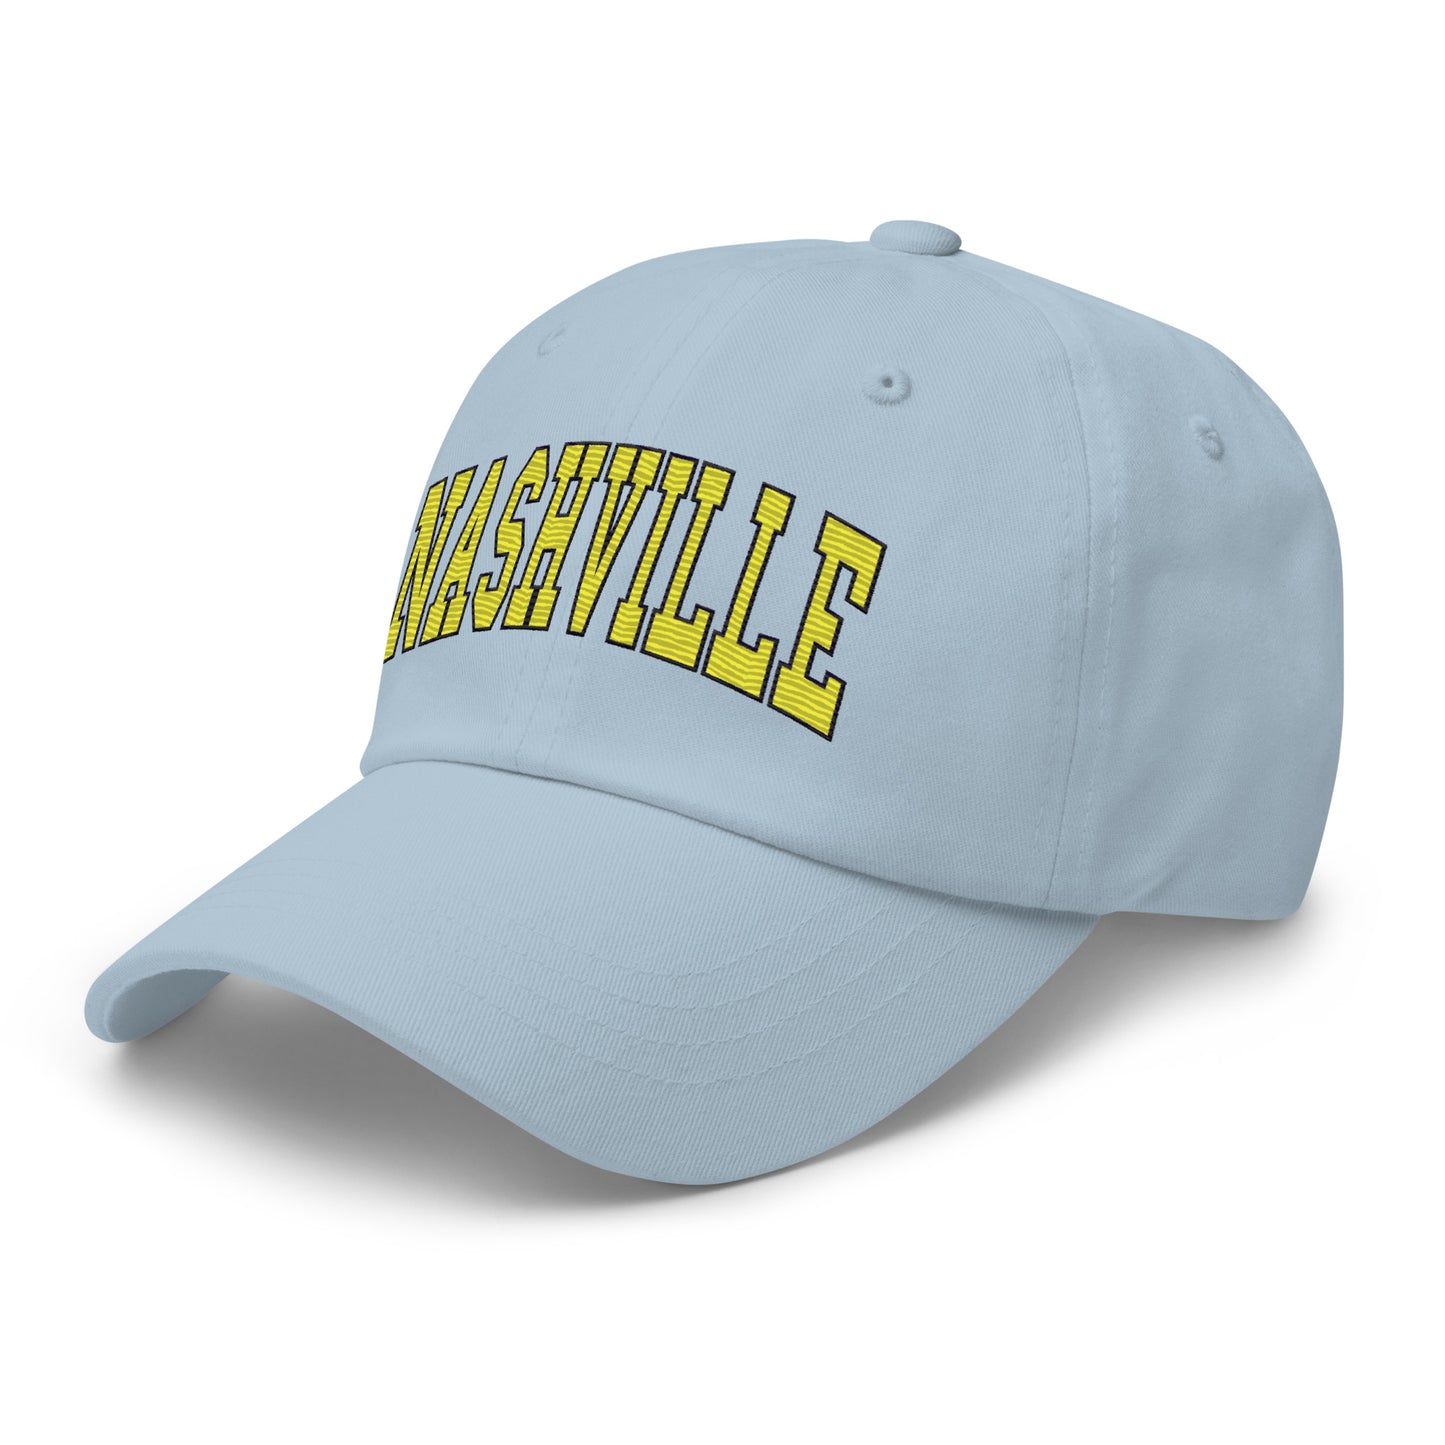 Nashville Classic College Dad hat